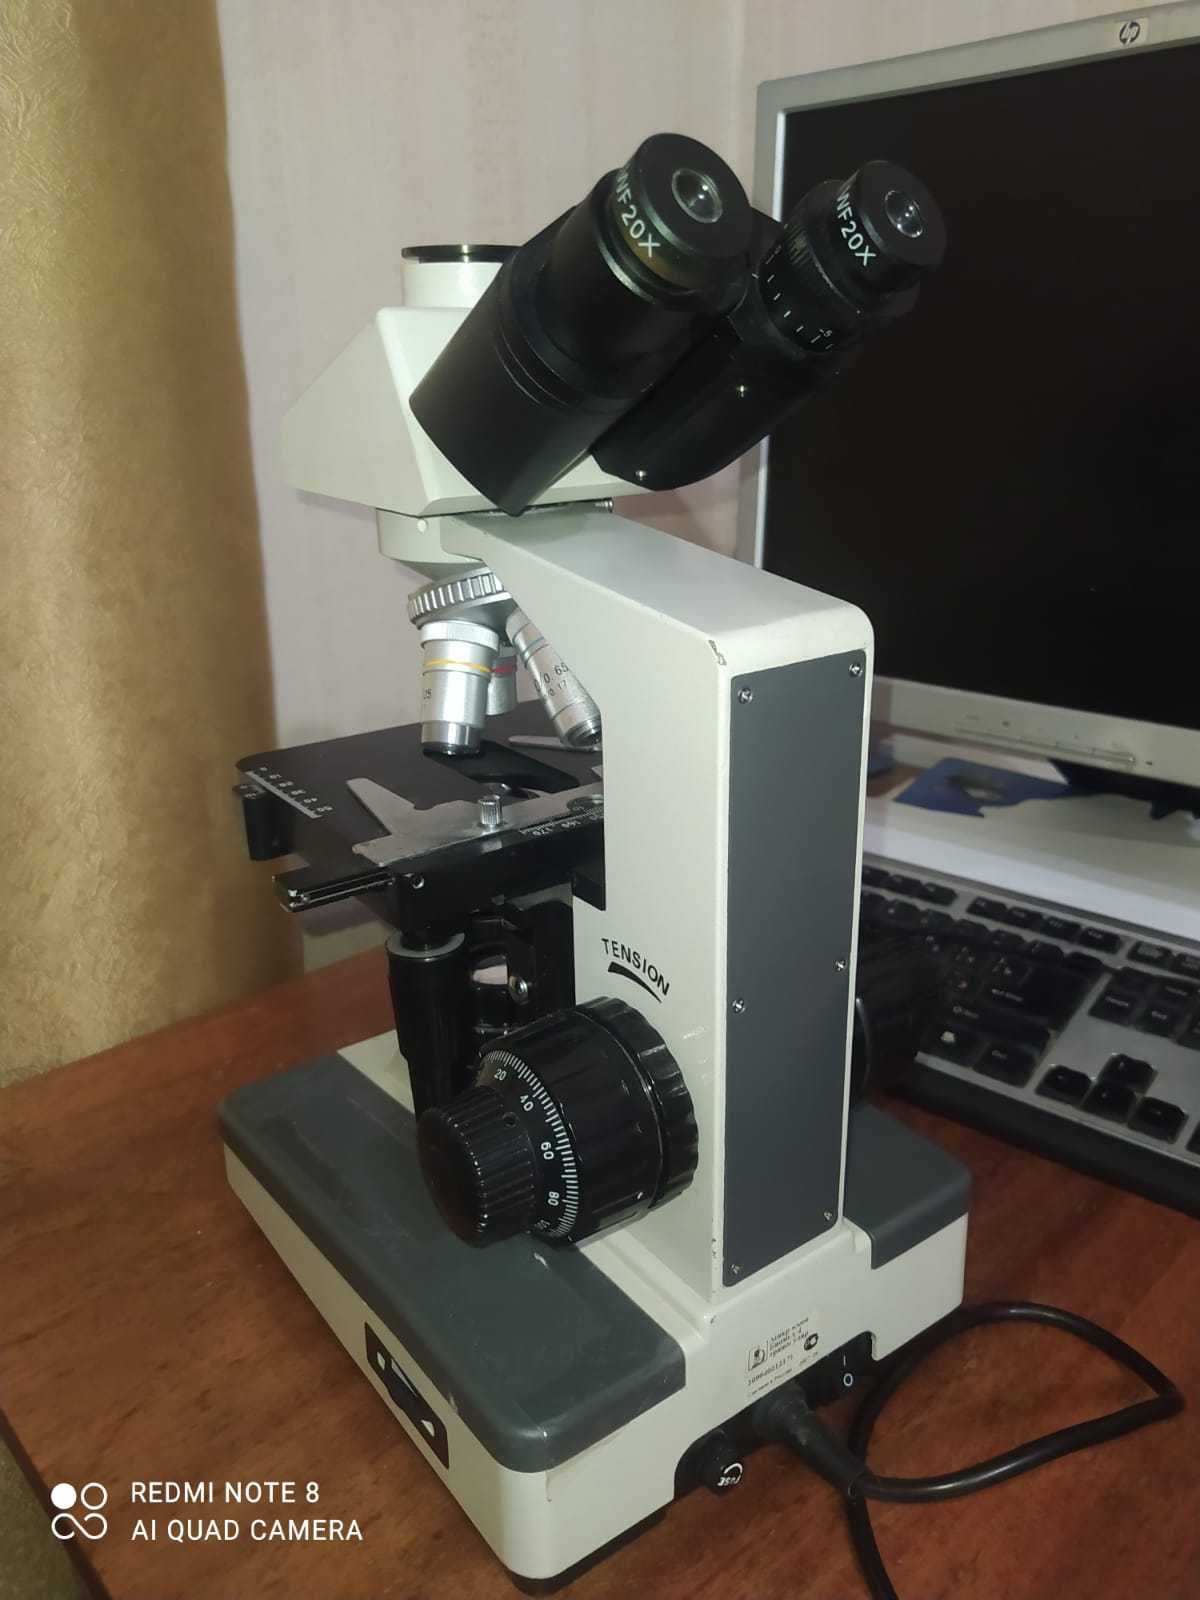 Микроскоп световой биологический, лабор.  40x - 1600x. Тринокулярный.